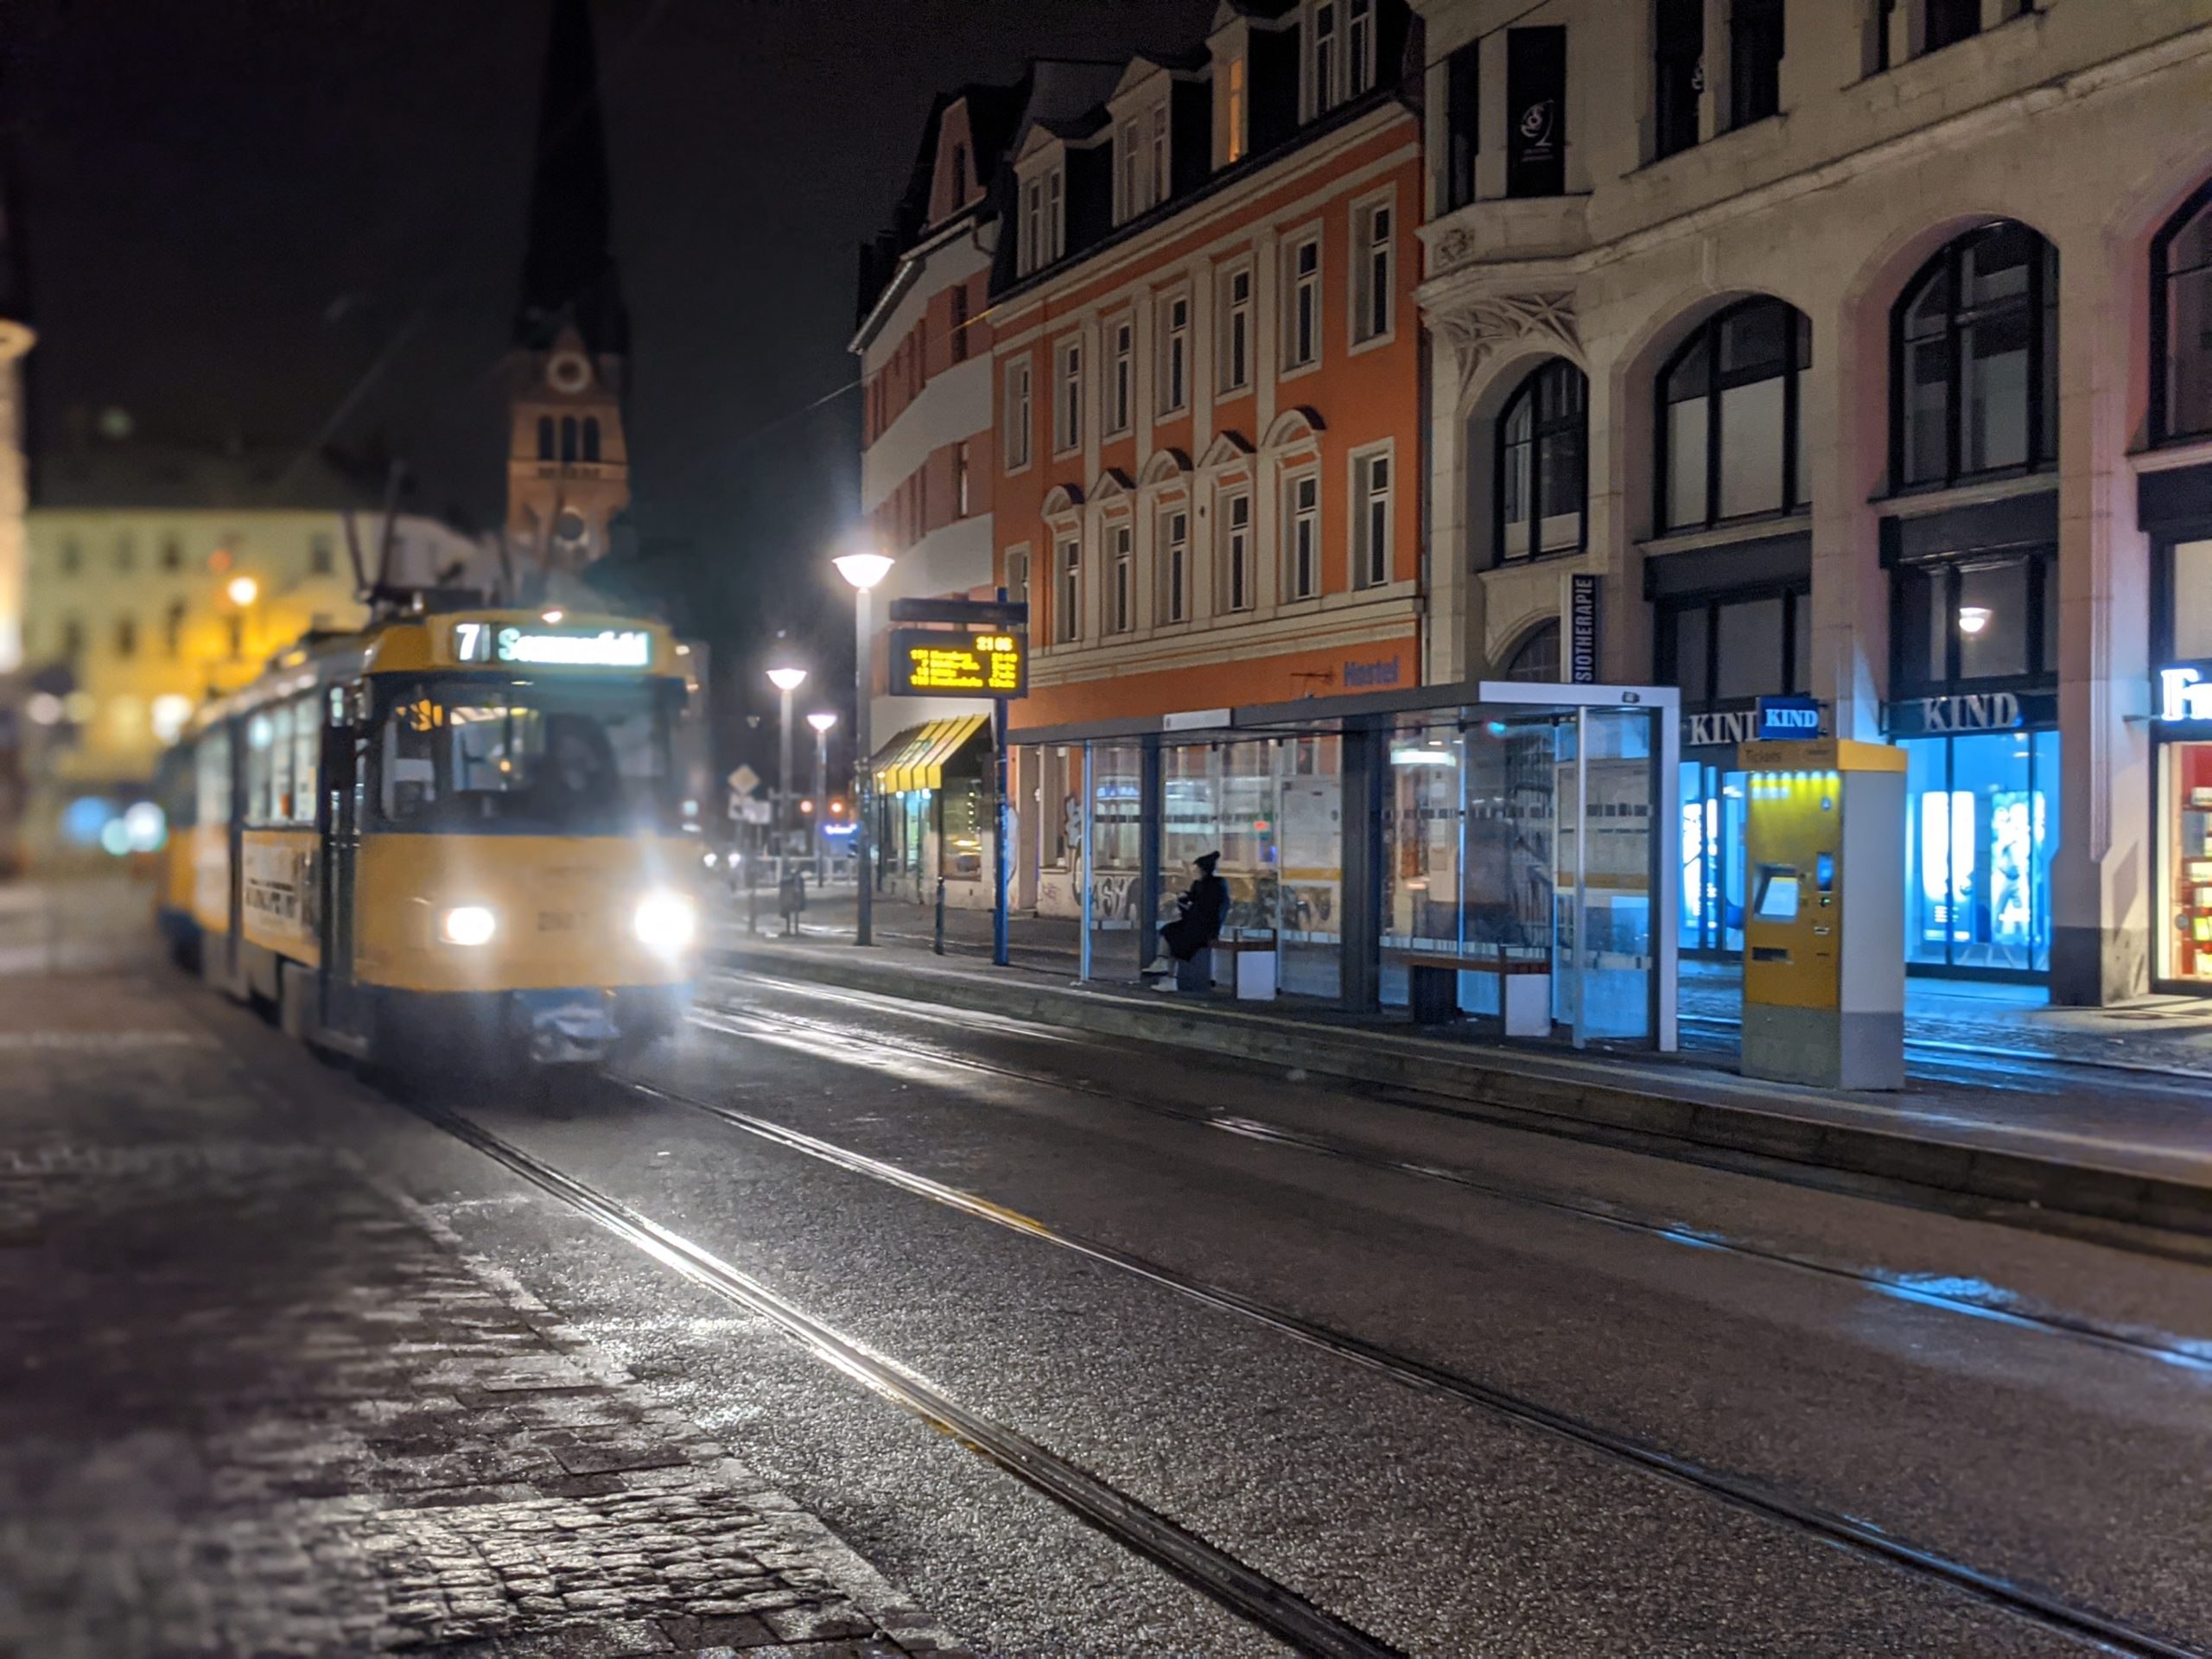 Tram-Portrait - Lindenauer Markt, Leipzig